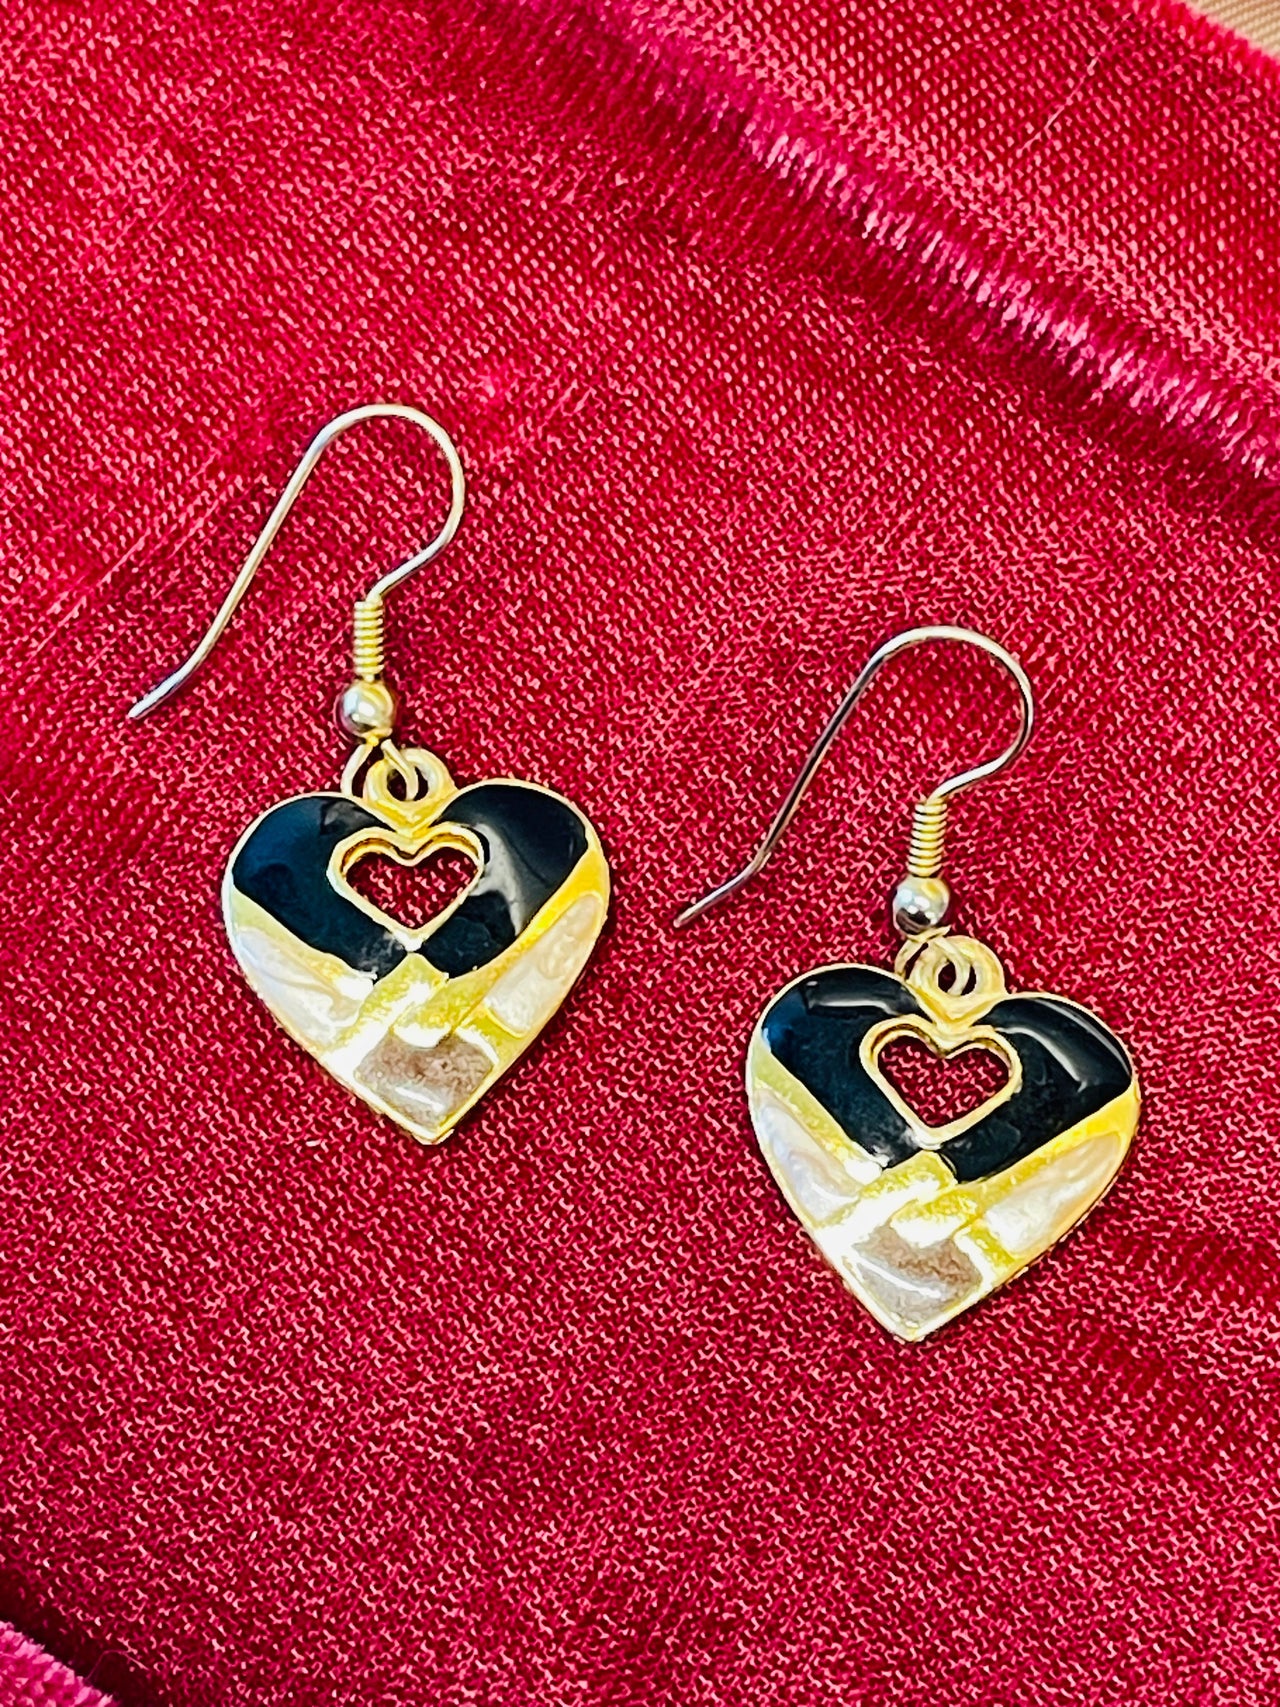 Black and Gold Heart Dangle Earrings Devil's Details 